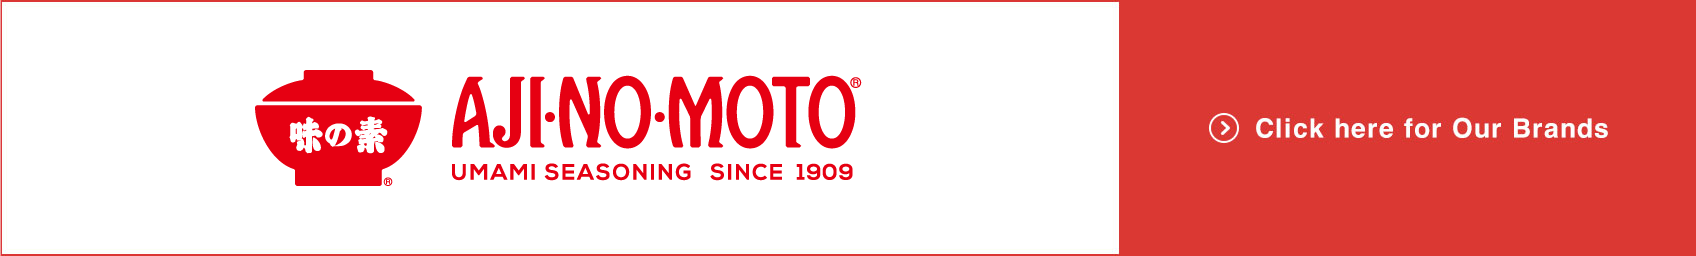 AJI-NO-MOTO 브랜드는 여기를 클릭하십시오